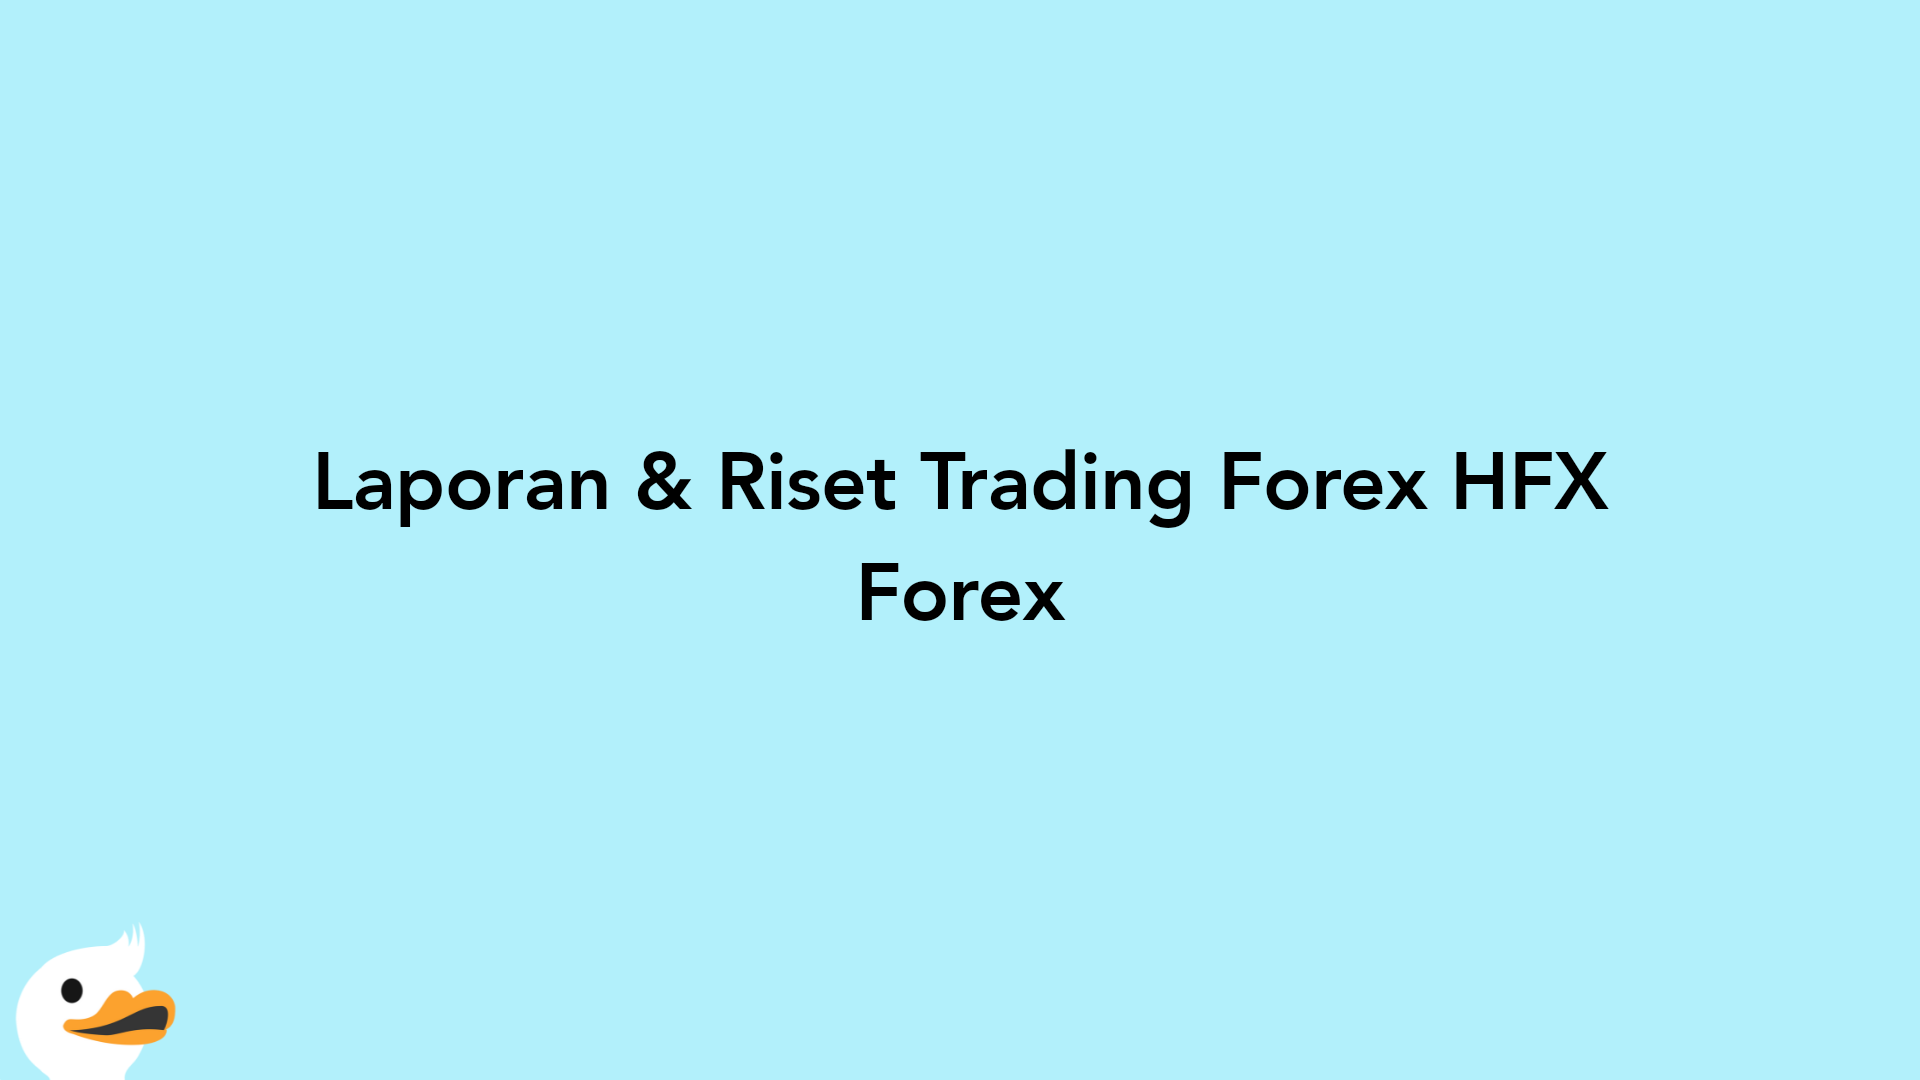 Laporan & Riset Trading Forex HFX Forex